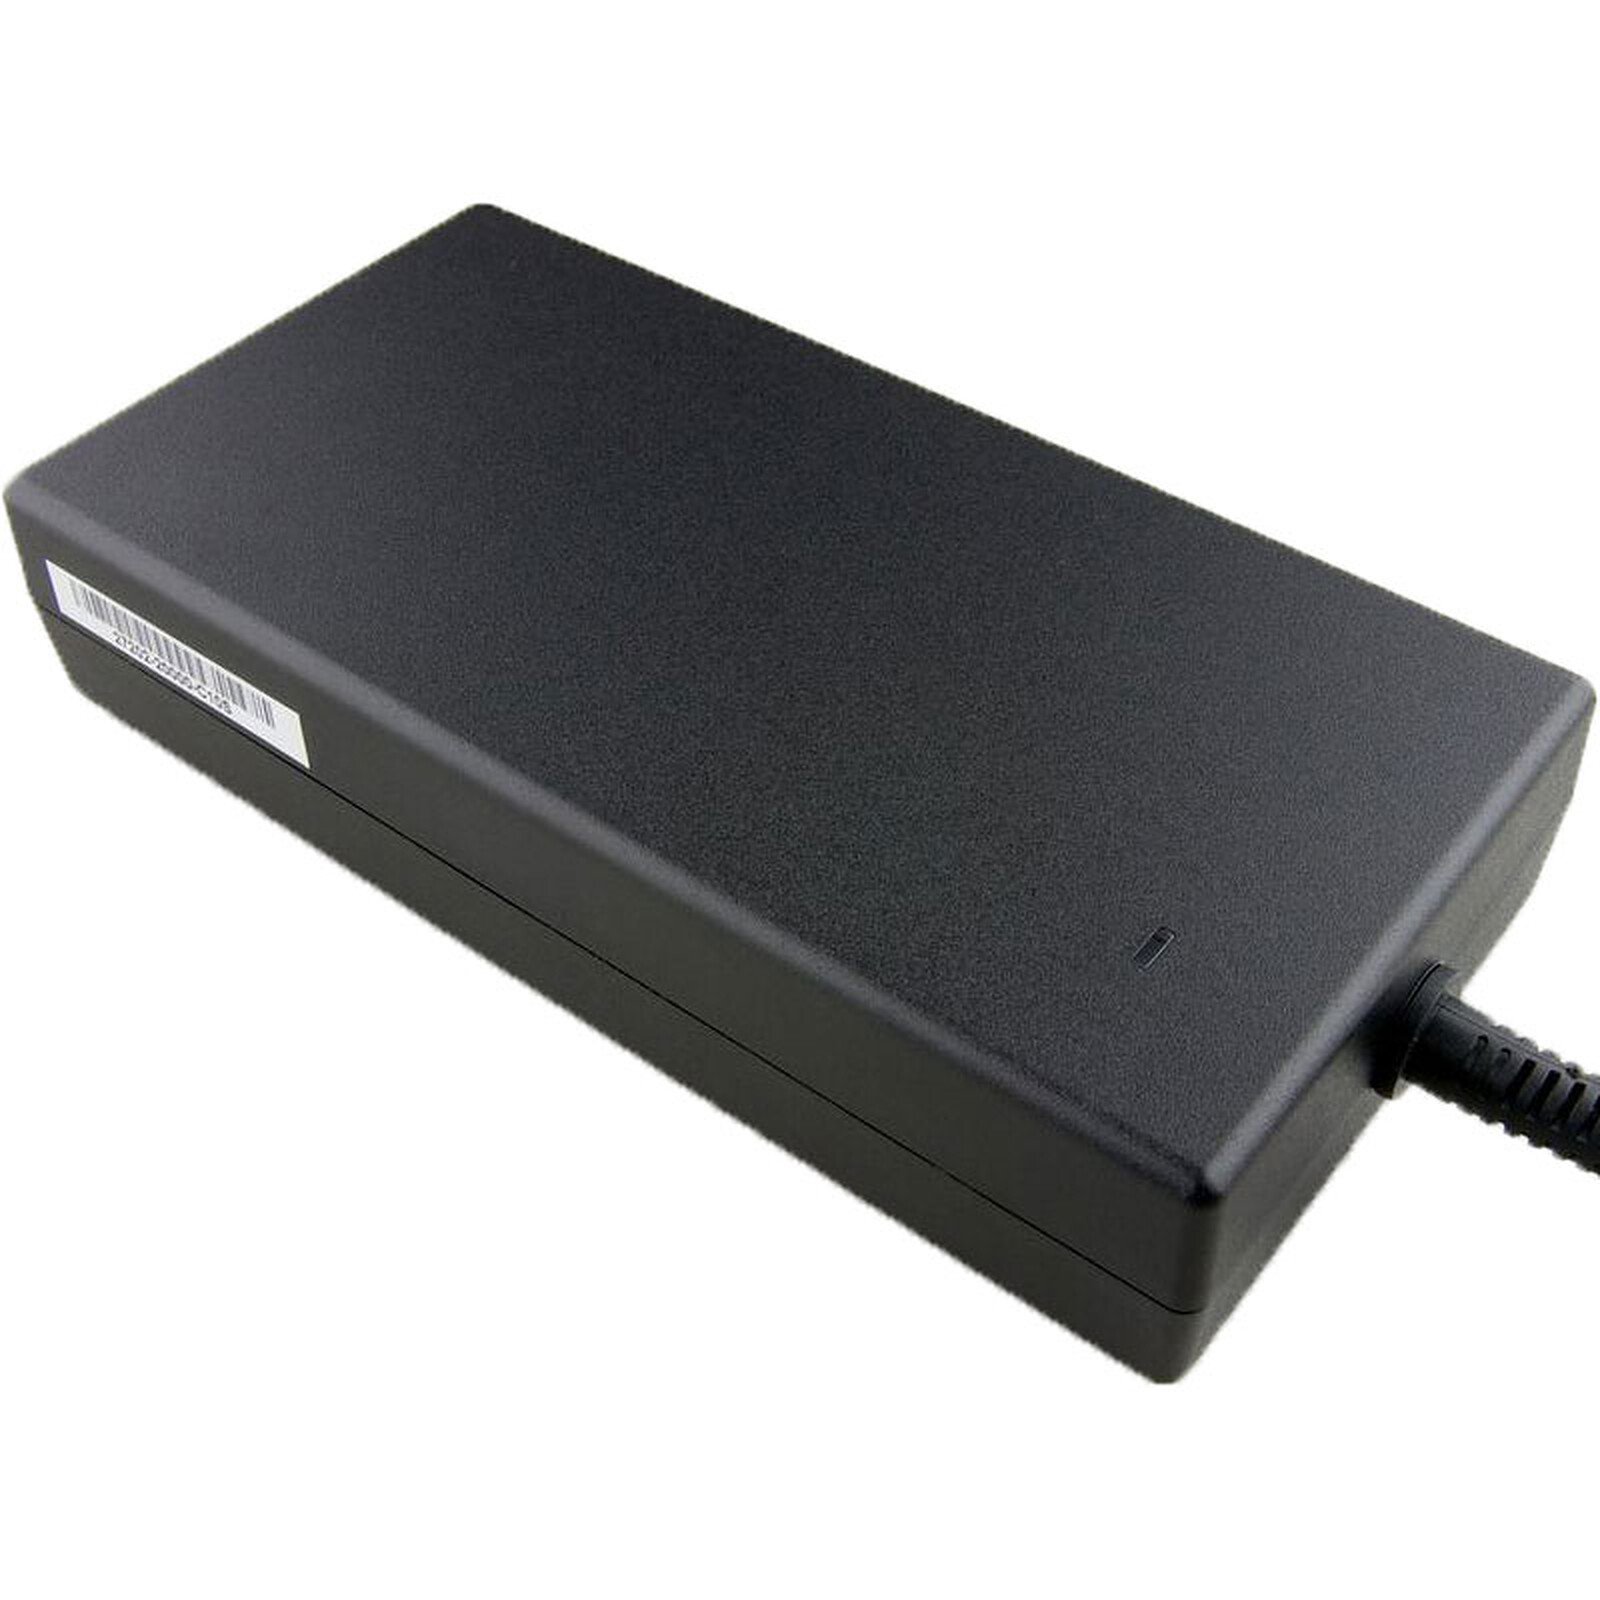 MSI 957-15811P-102 - Chargeur PC portable - Garantie 3 ans LDLC